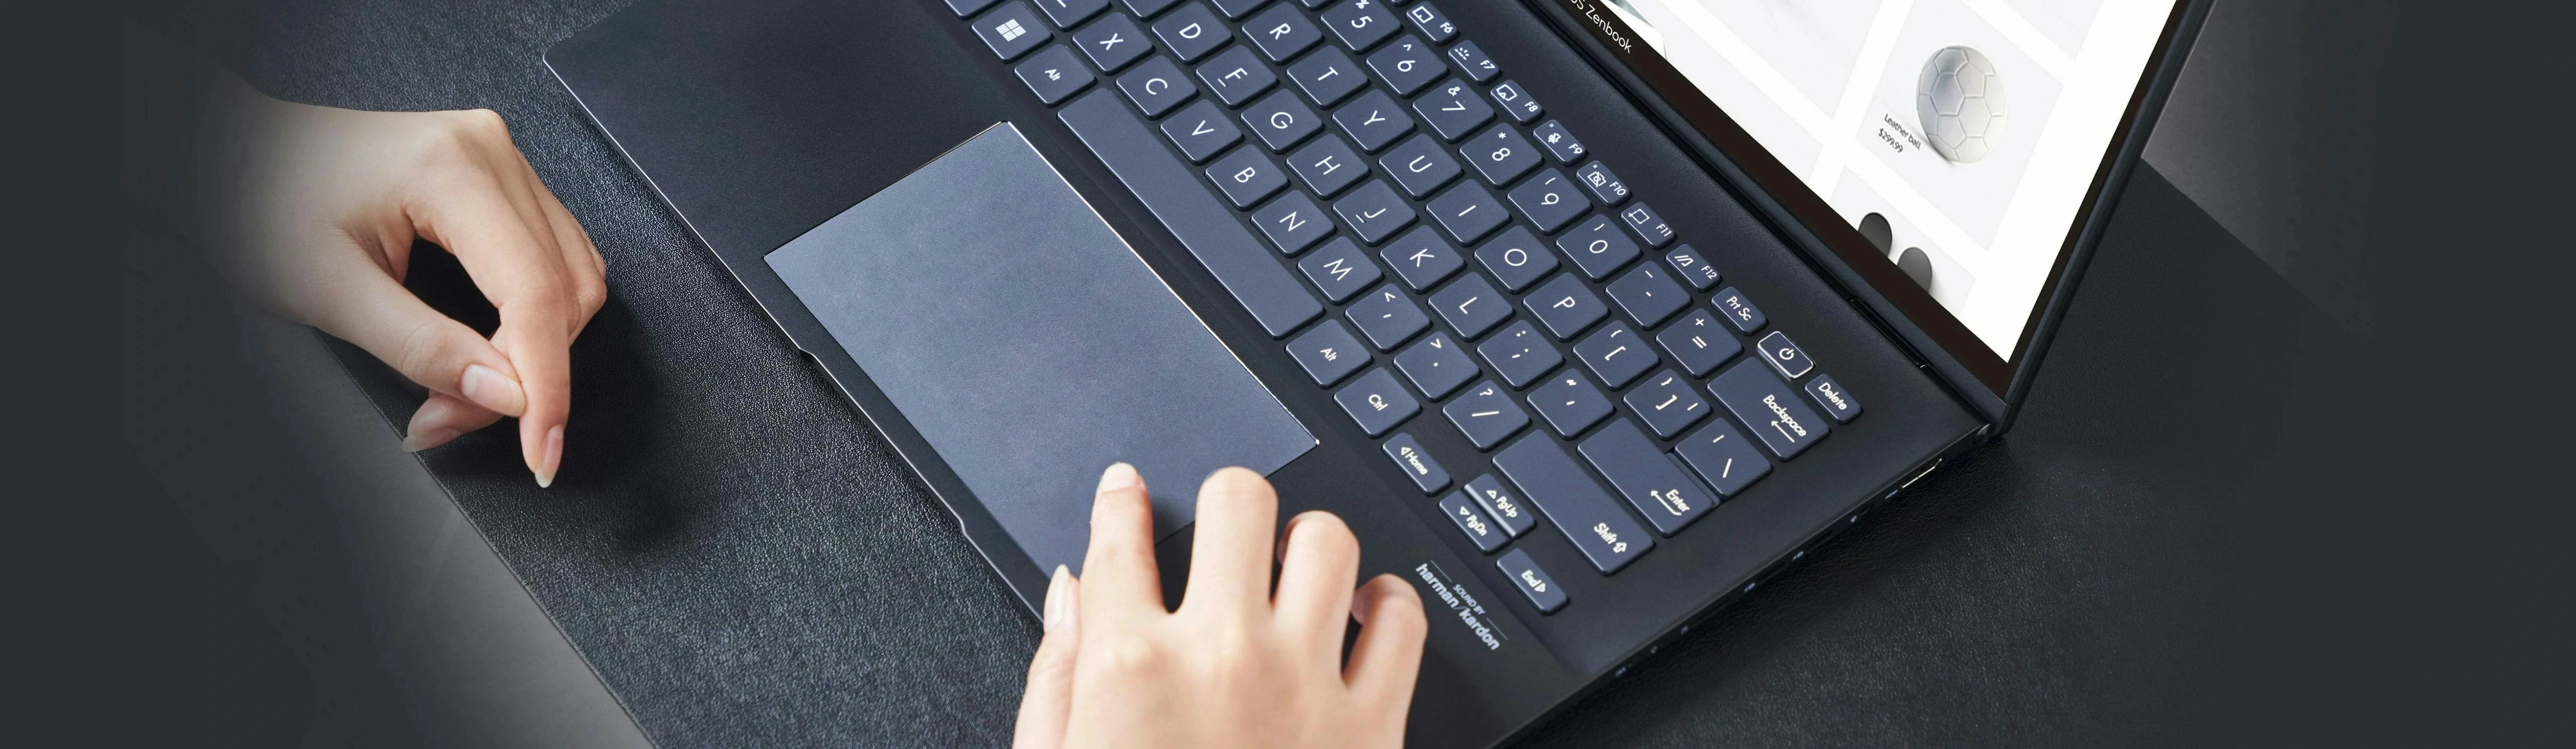 双手在搭载 ErgoSense 键盘的笔电上打字的俯视图。